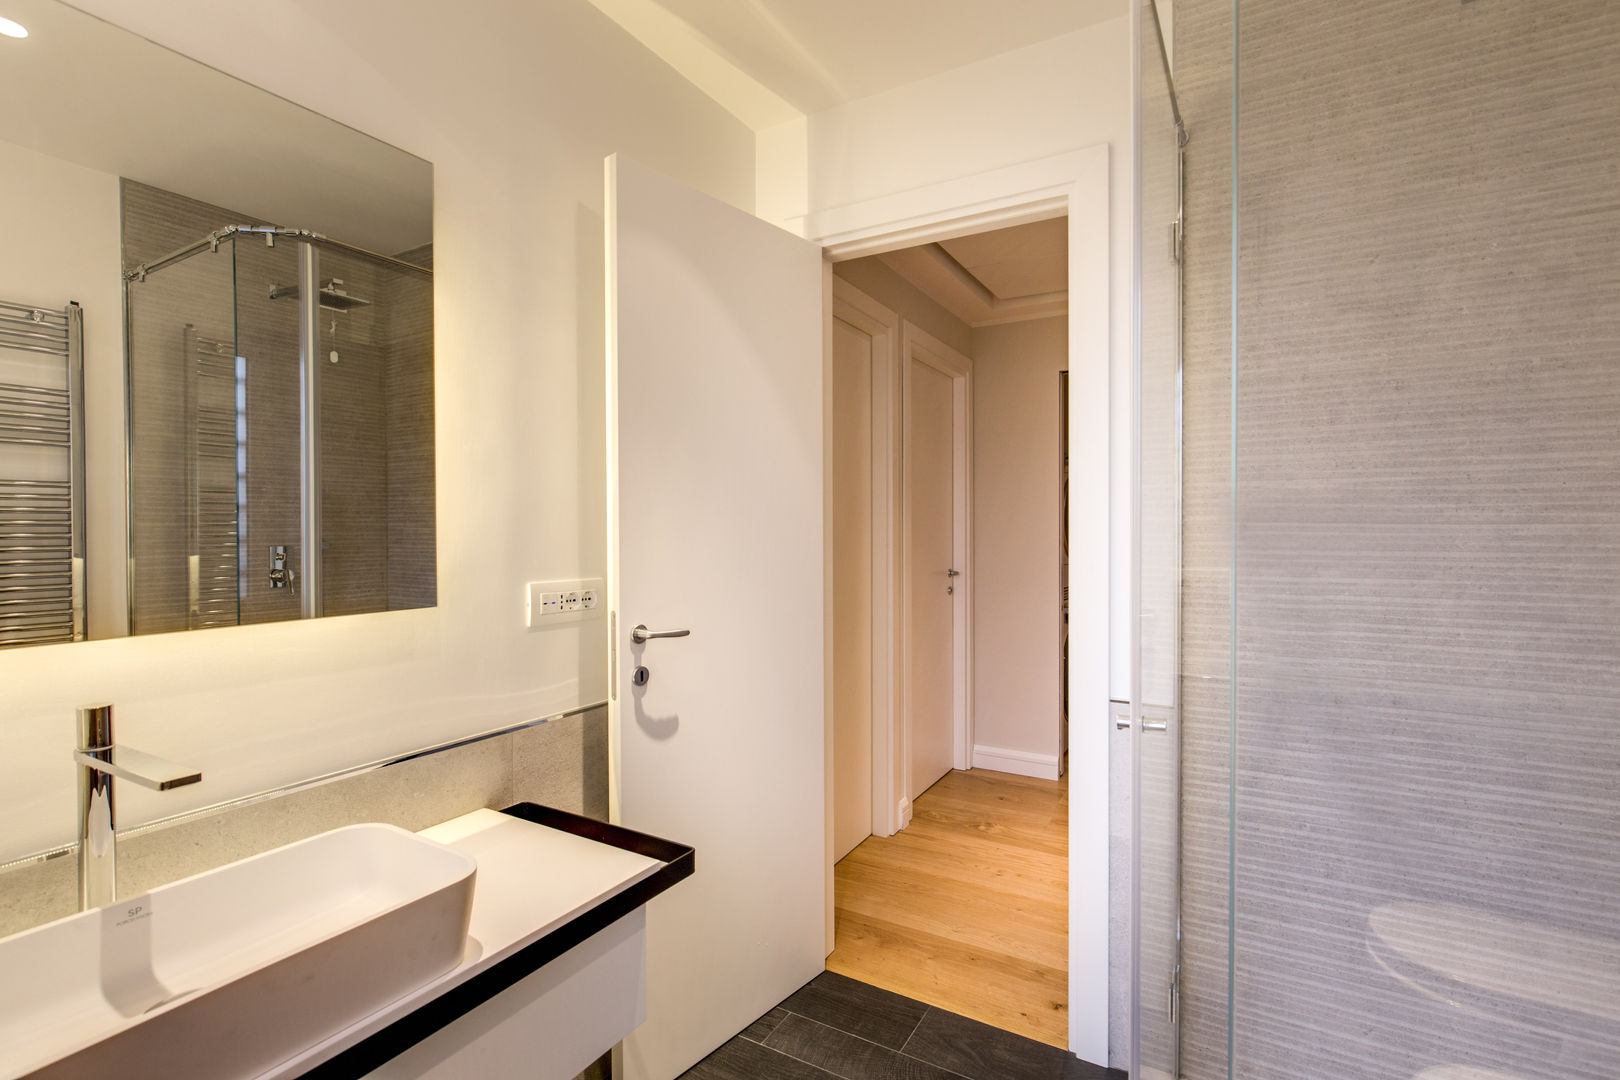 CAMILLUCCIA: Bello e Funzionato , MOB ARCHITECTS MOB ARCHITECTS Modern style bathrooms